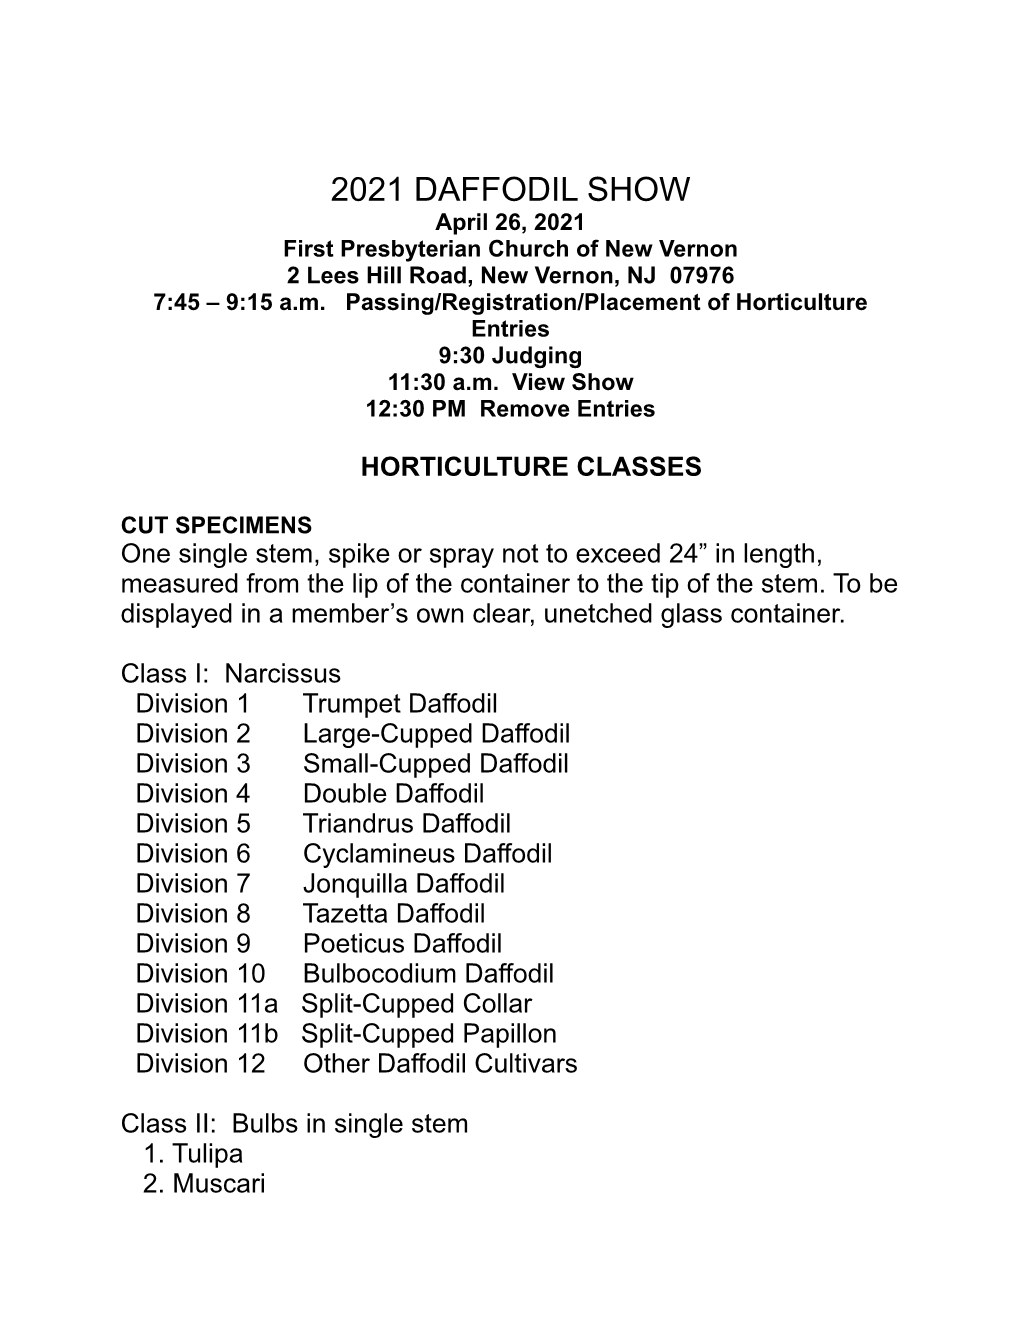 2021 Daffodil Show Schedule